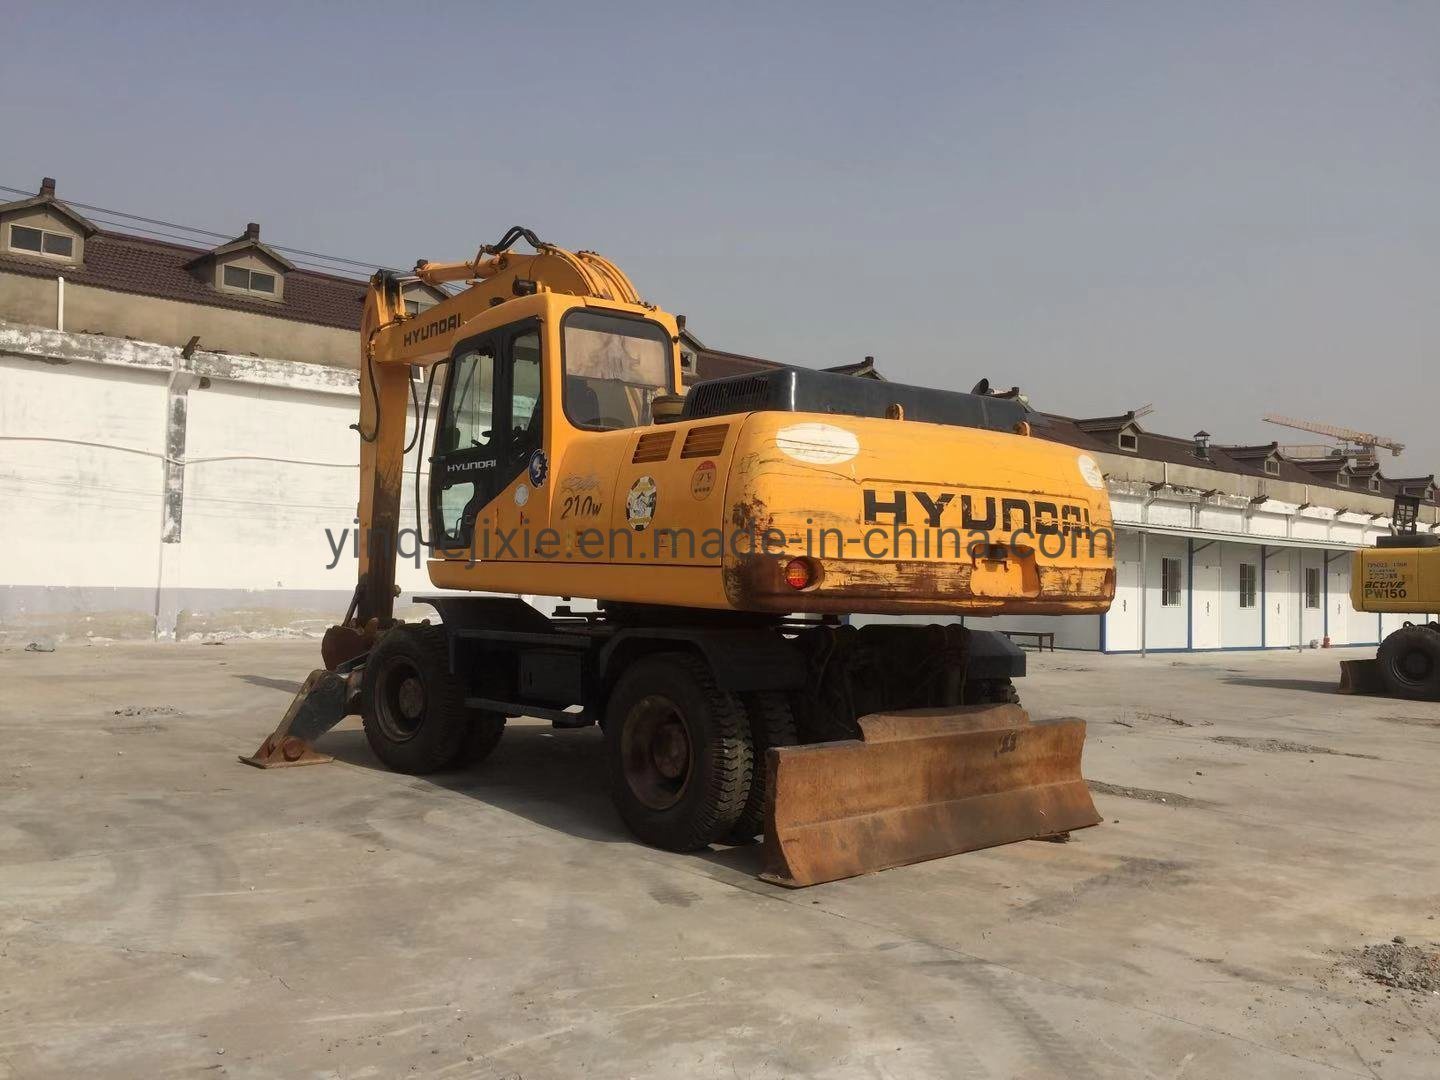 
                Escavatore gommato Hyundai 200W usato Hyundai con pneumatici da 20 tonnellate Escavatore gommato
            